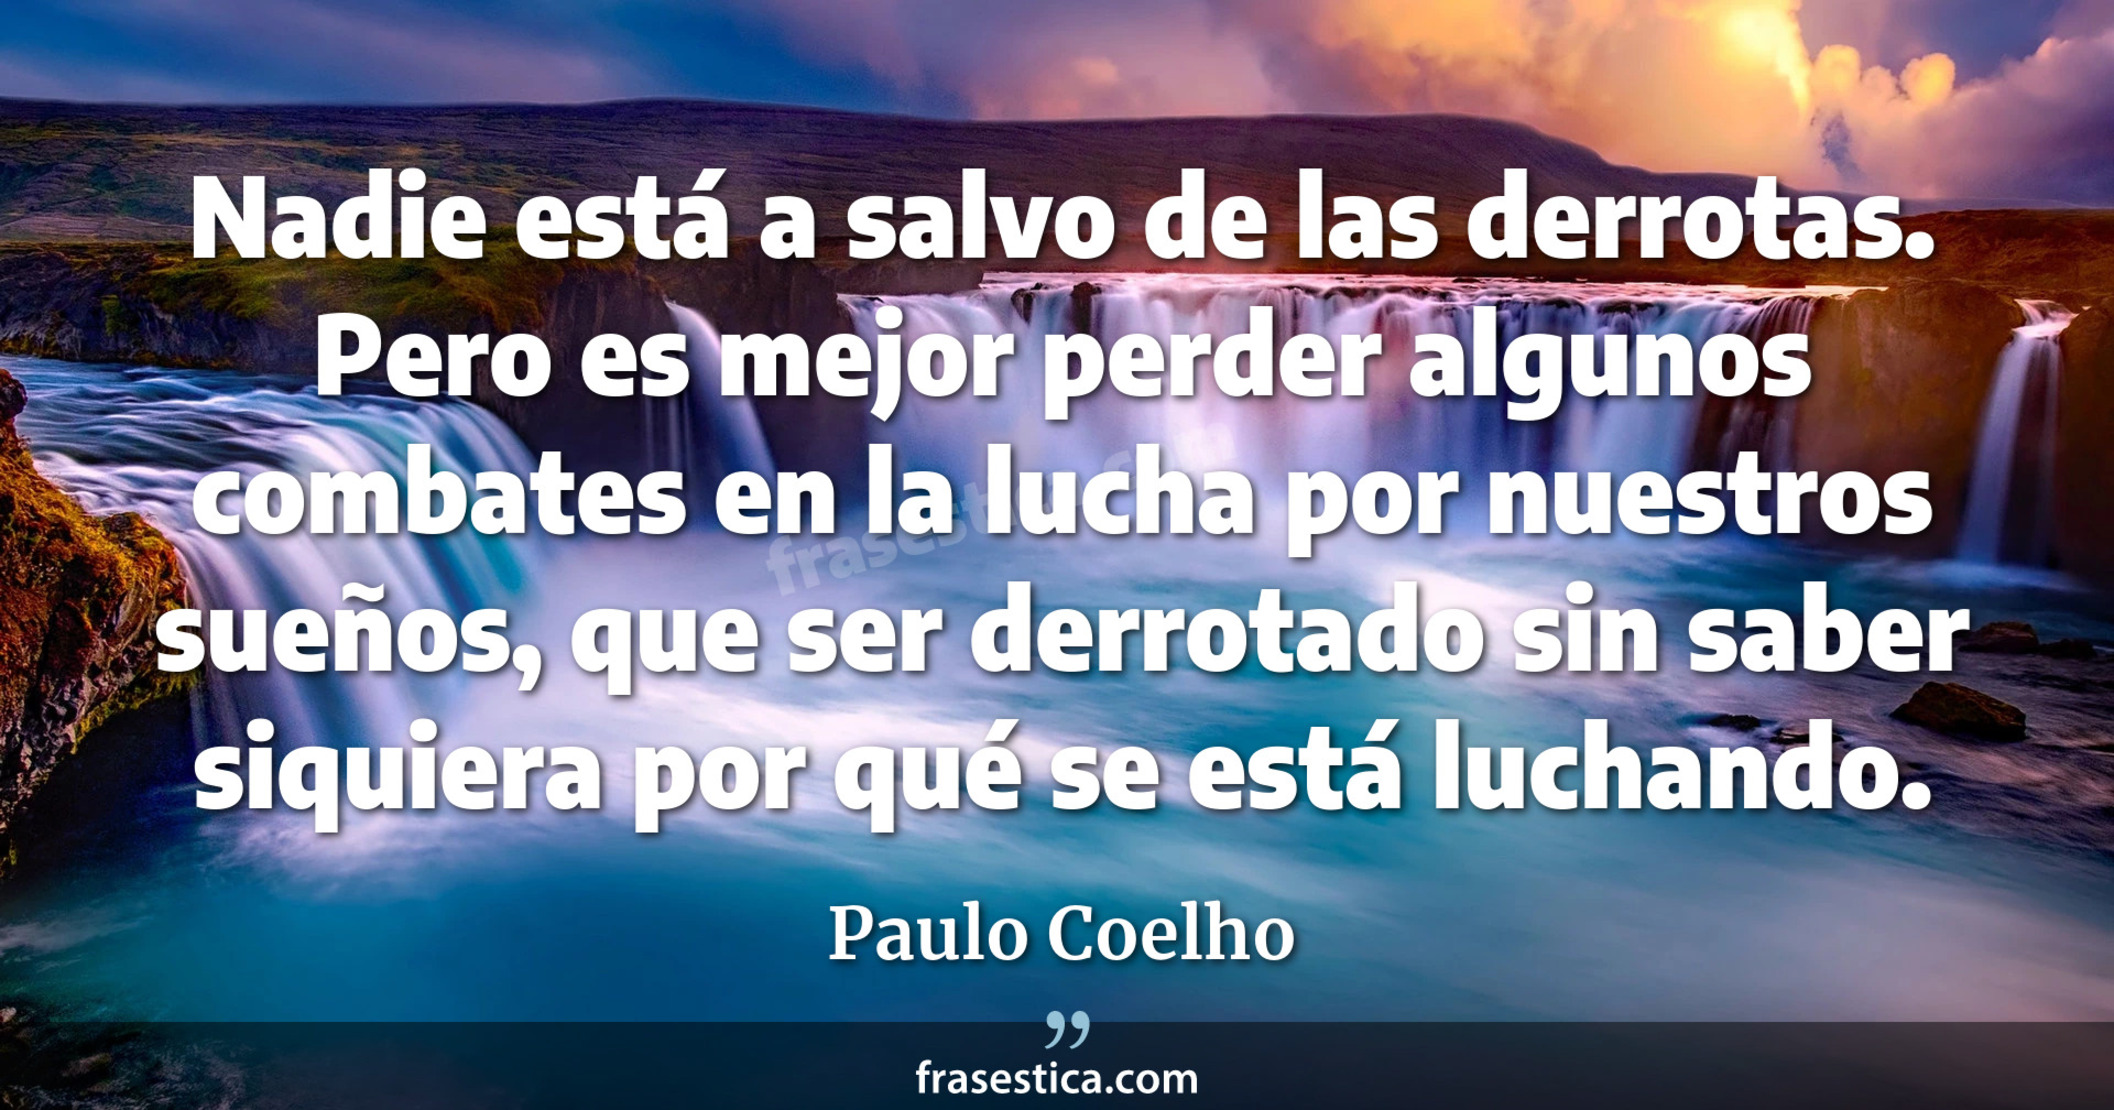 Nadie está a salvo de las derrotas. Pero es mejor perder algunos combates en la lucha por nuestros sueños, que ser derrotado sin saber siquiera por qué se está luchando. - Paulo Coelho